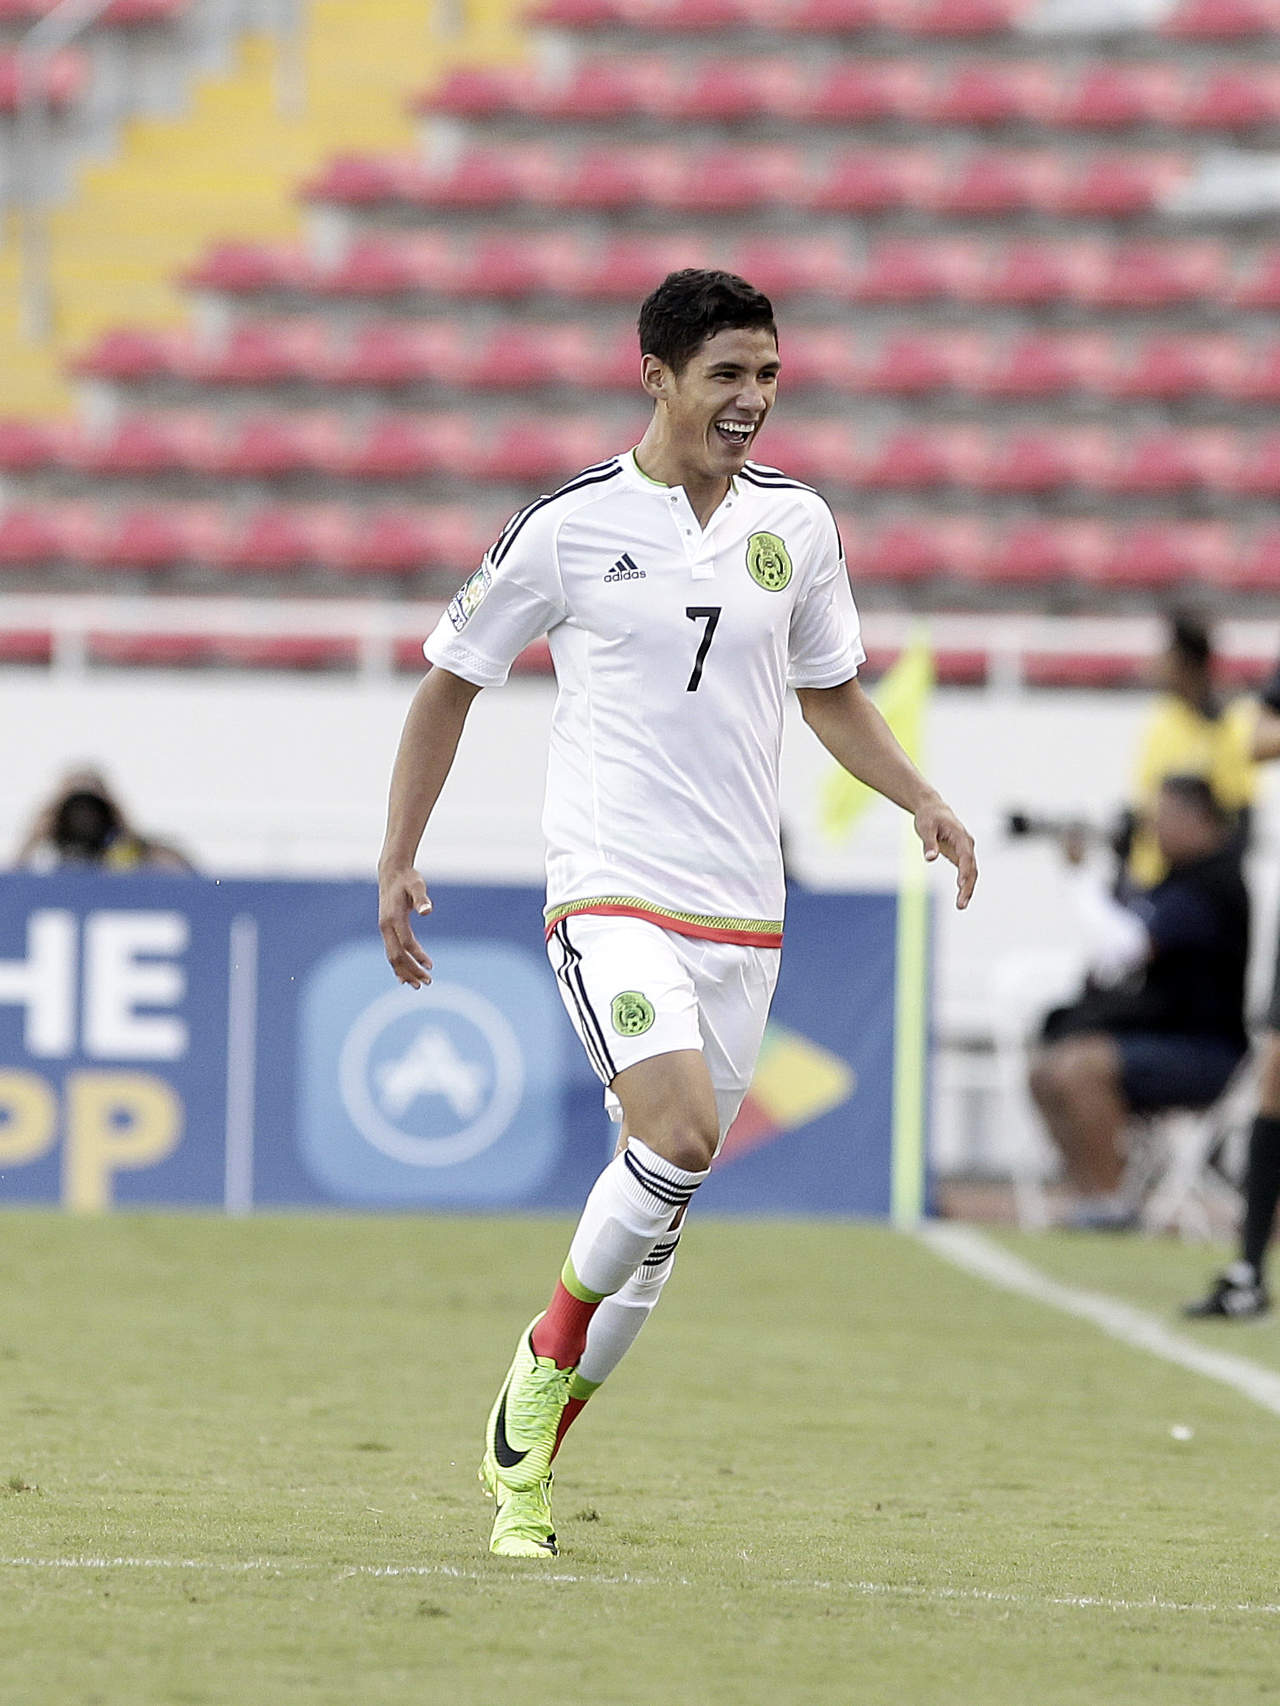 El juvenil gomezpalatino fue considerado en la convocatoria de la Selección Nacional por el actual técnico para la gira europea. (ARCHIVO)